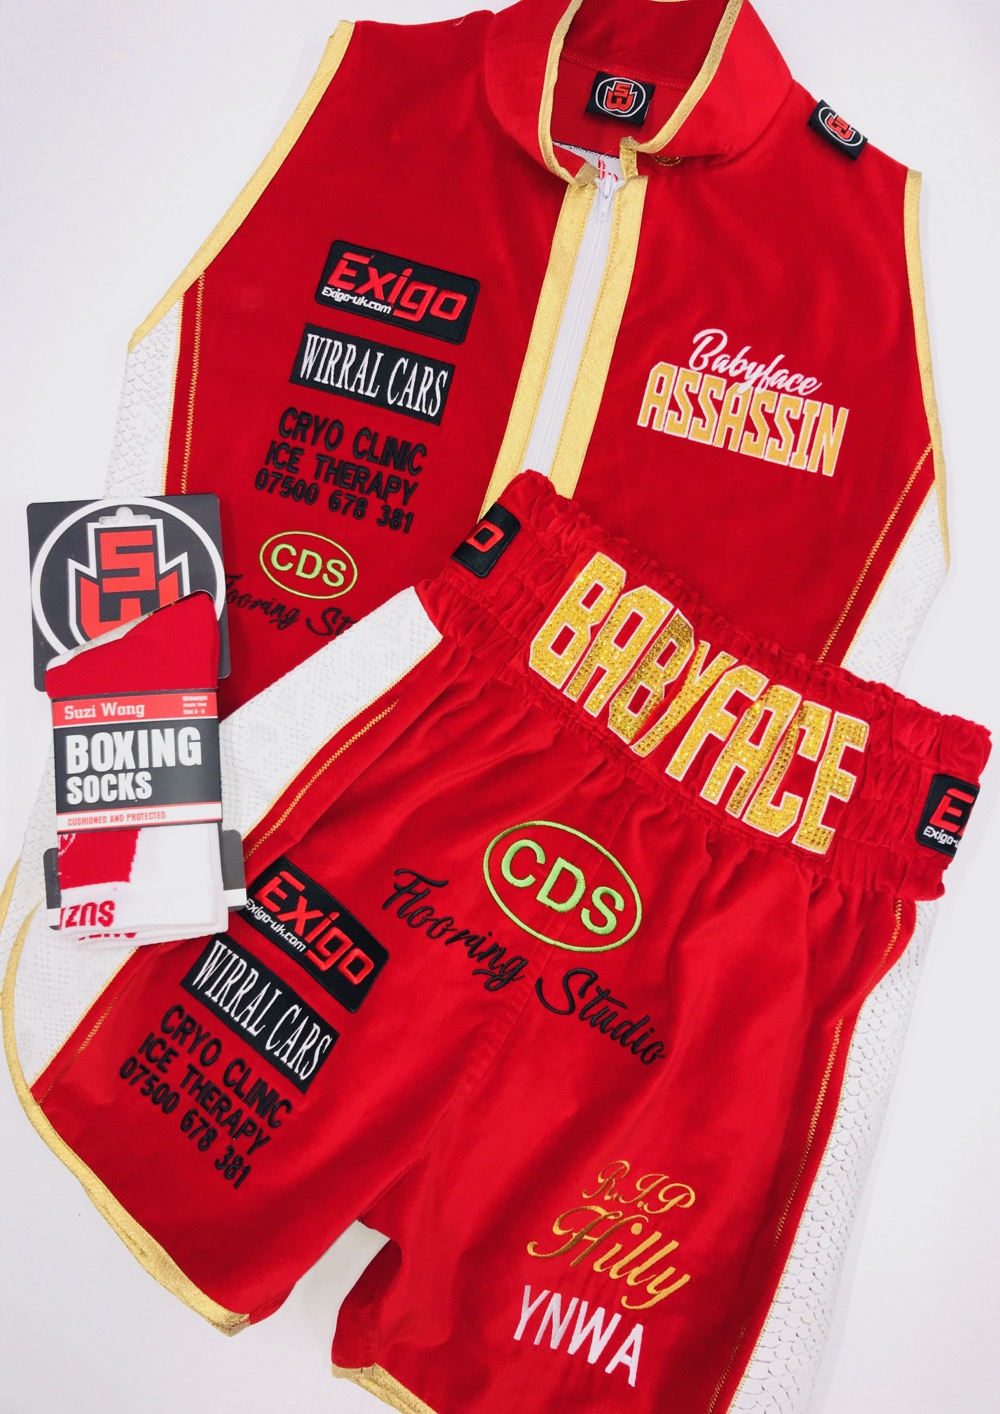 Paul butler red velvet boxing kit